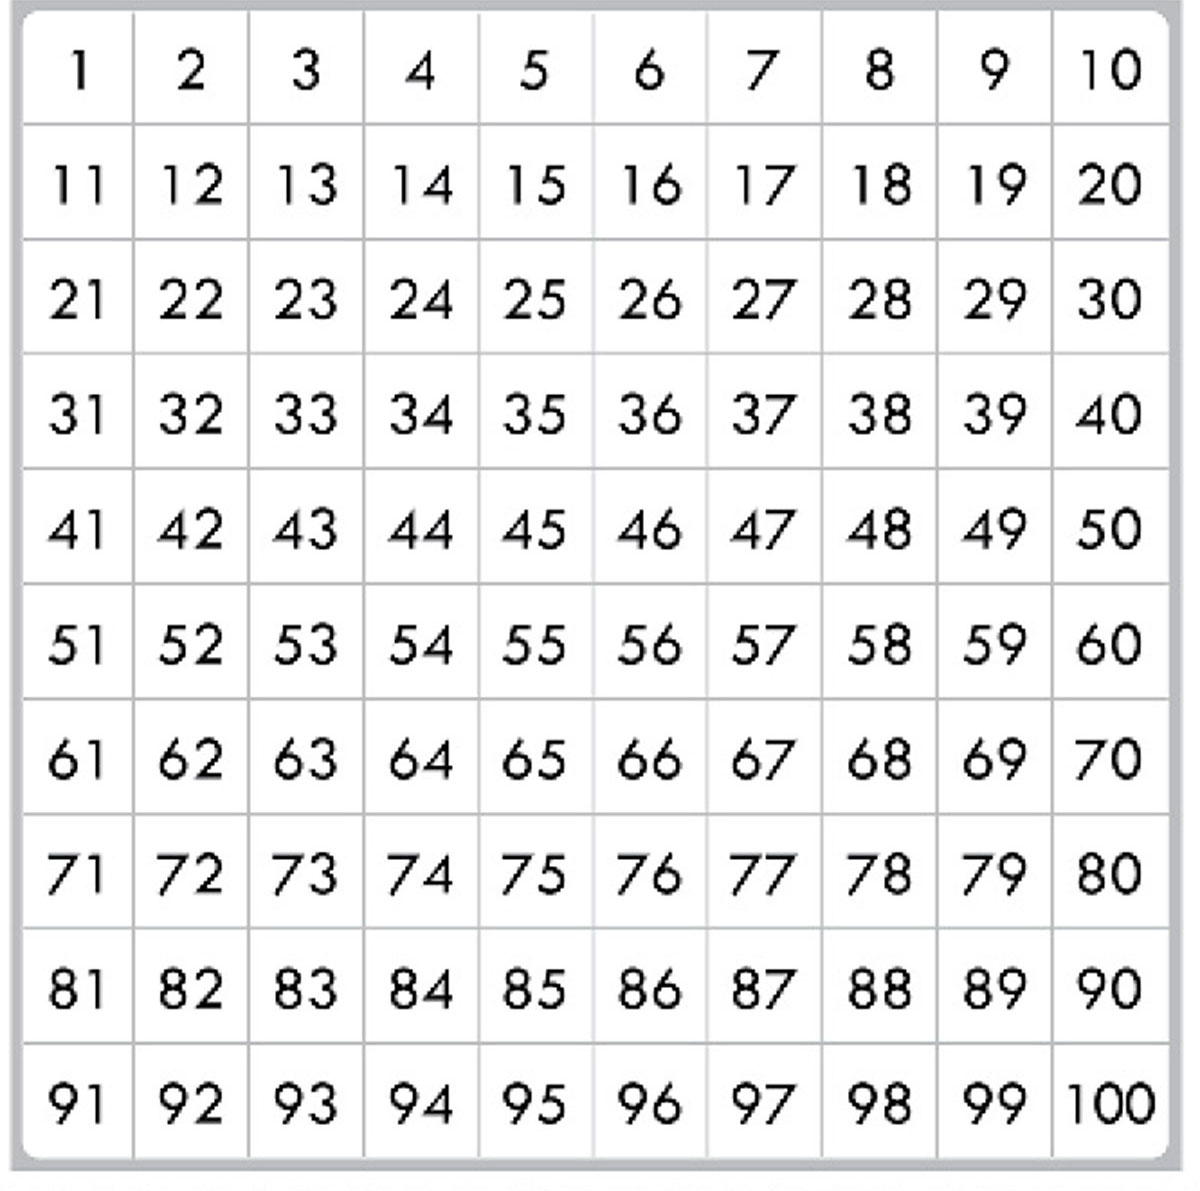 Табличка с цифрами от 1 до 100